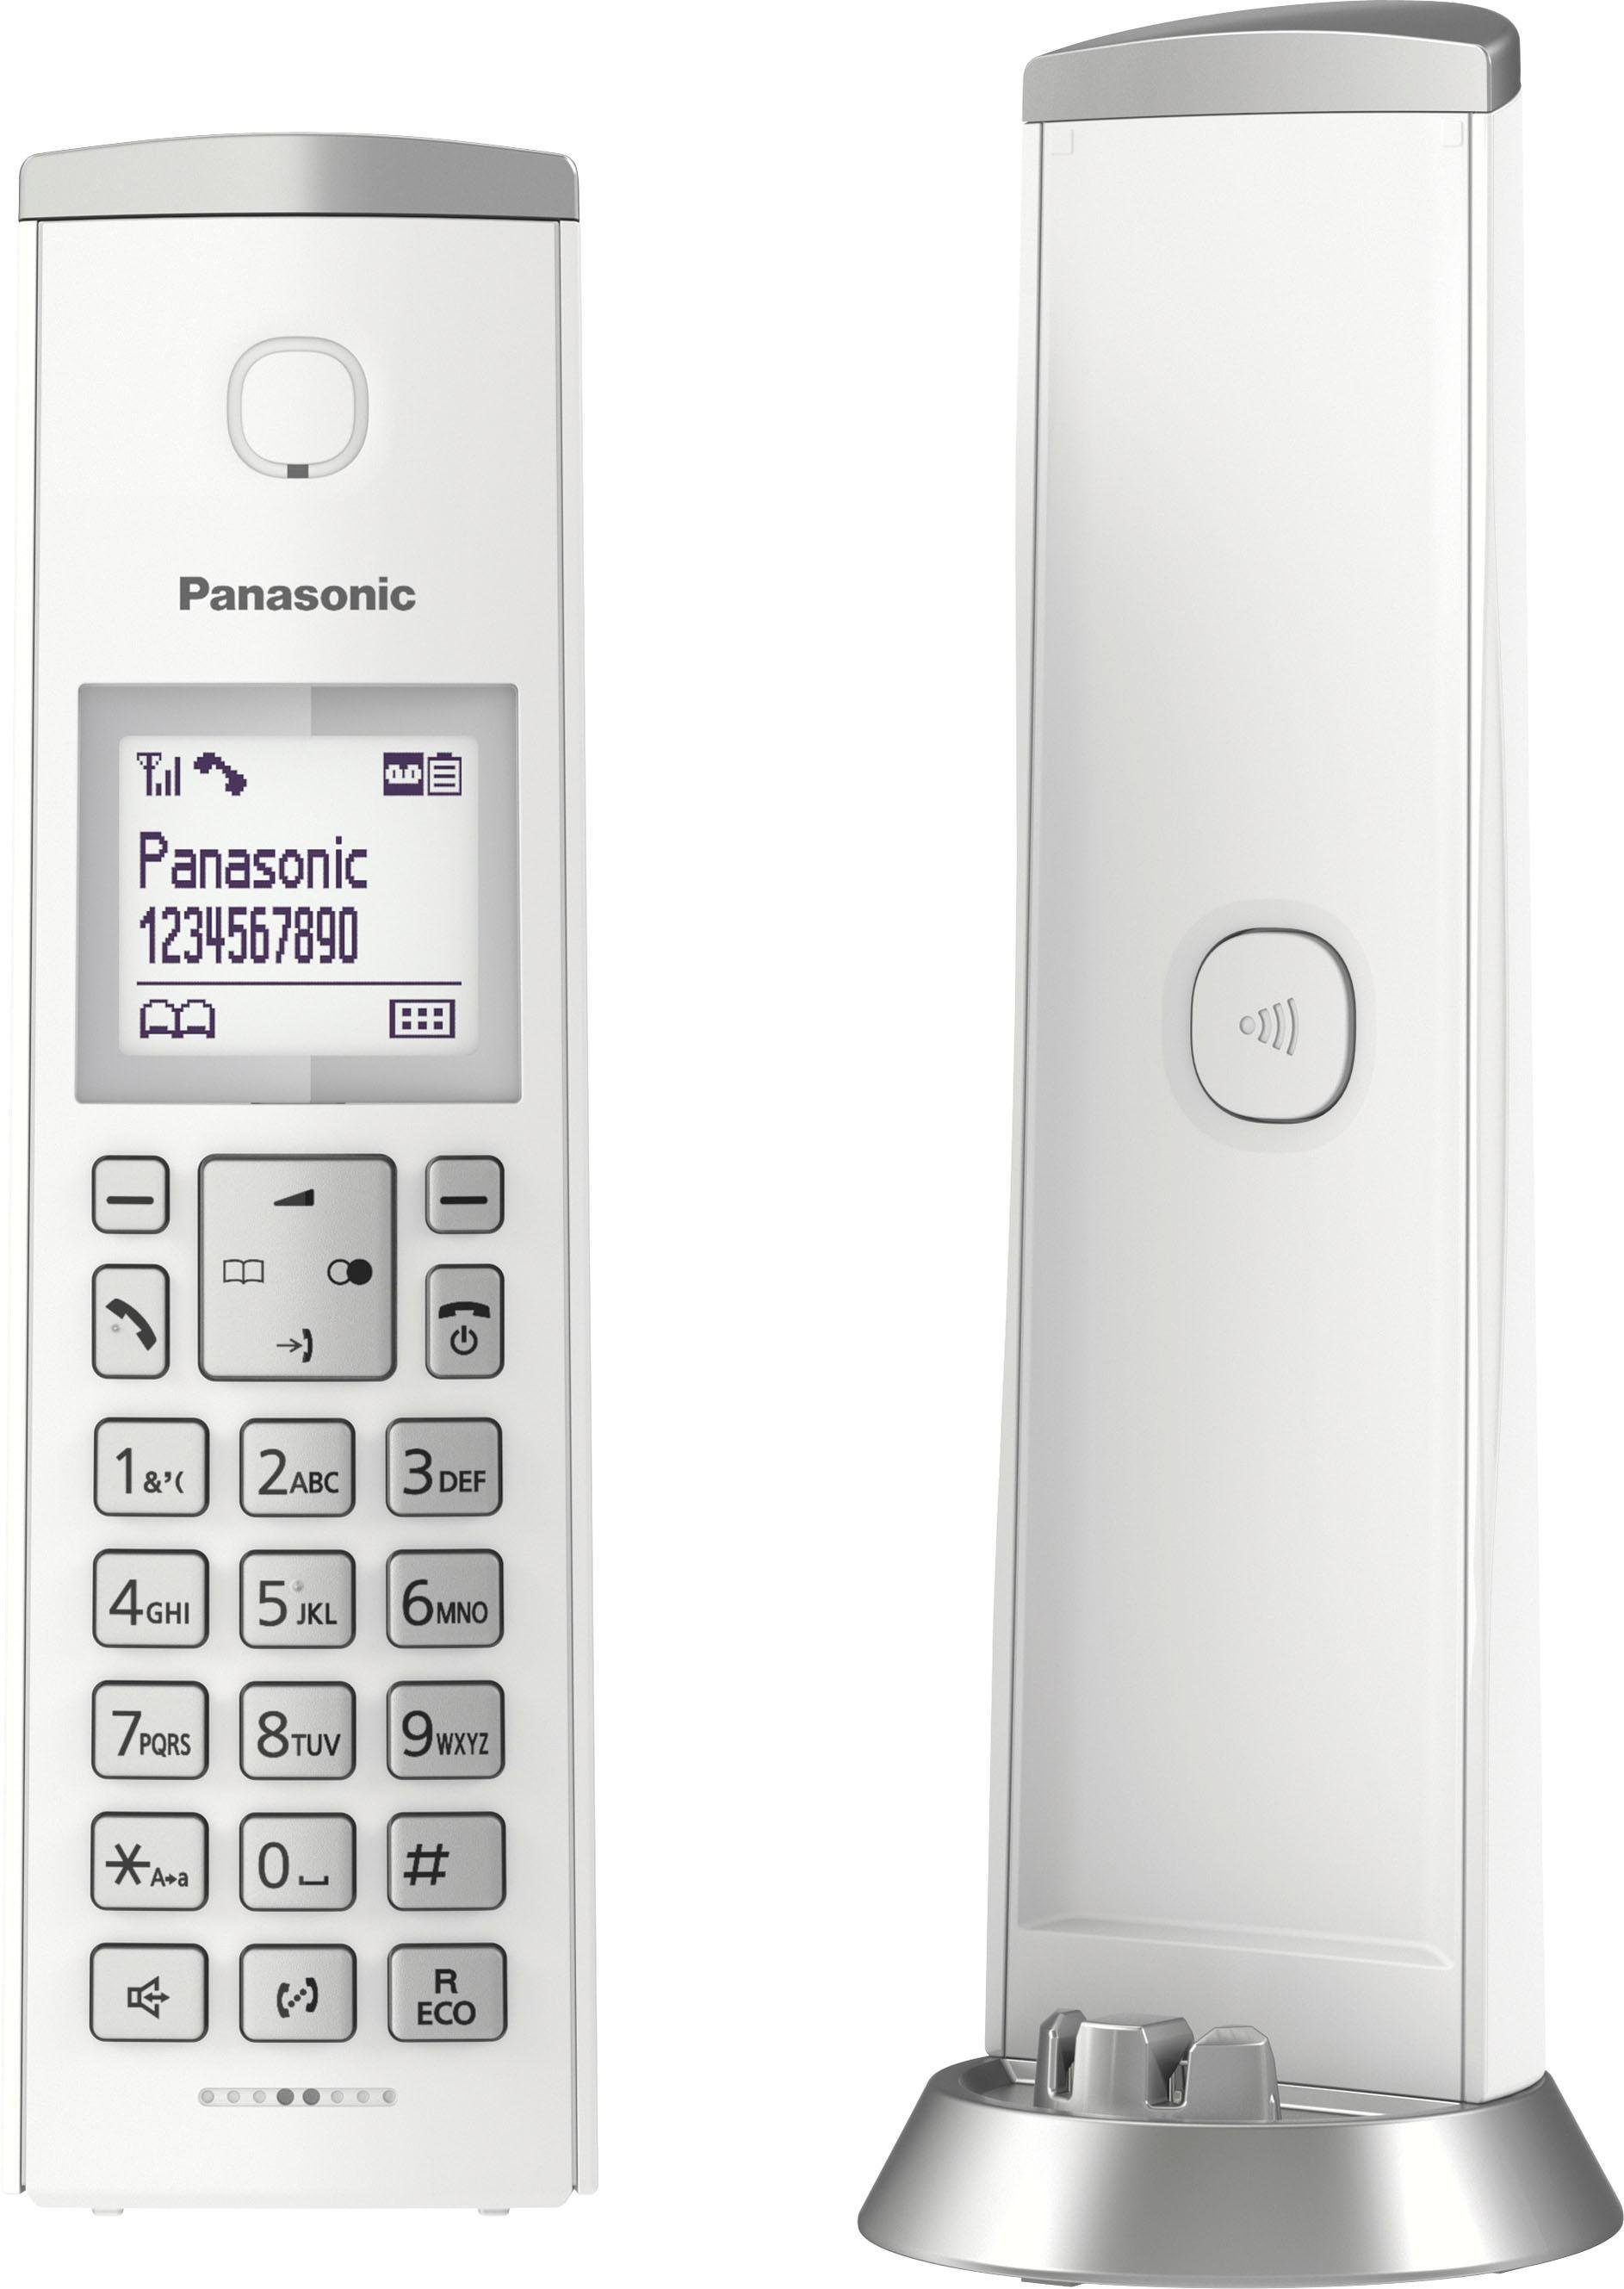 (Mobilteile: DECT-Telefon 1, Panasonic KX-TGK220 Wege Schnurloses weiß/silberfarben Navigationstaste) 4